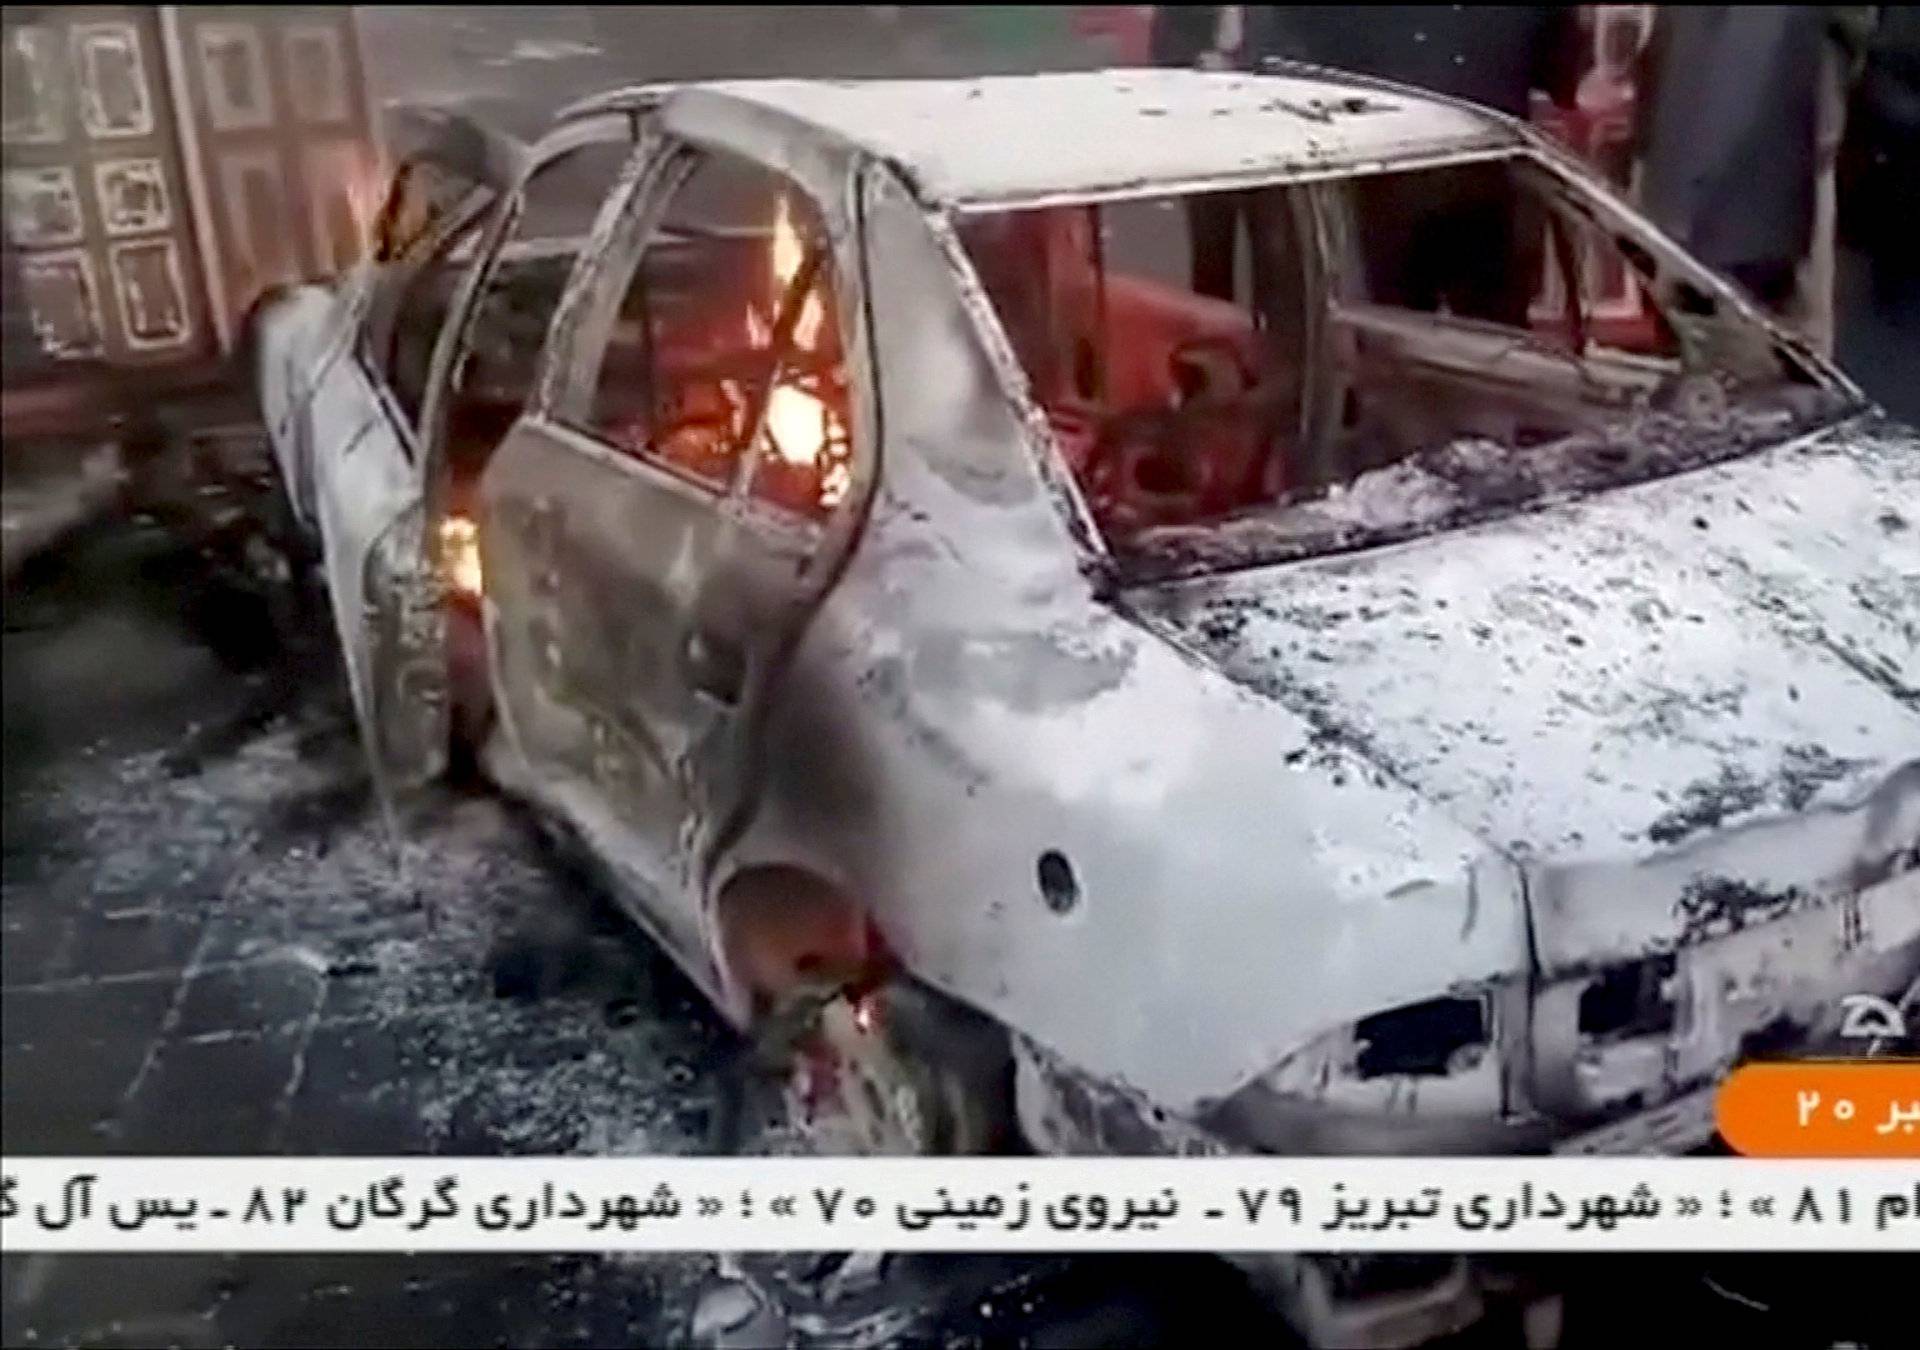 People stand near a burning car in Tuyserkan